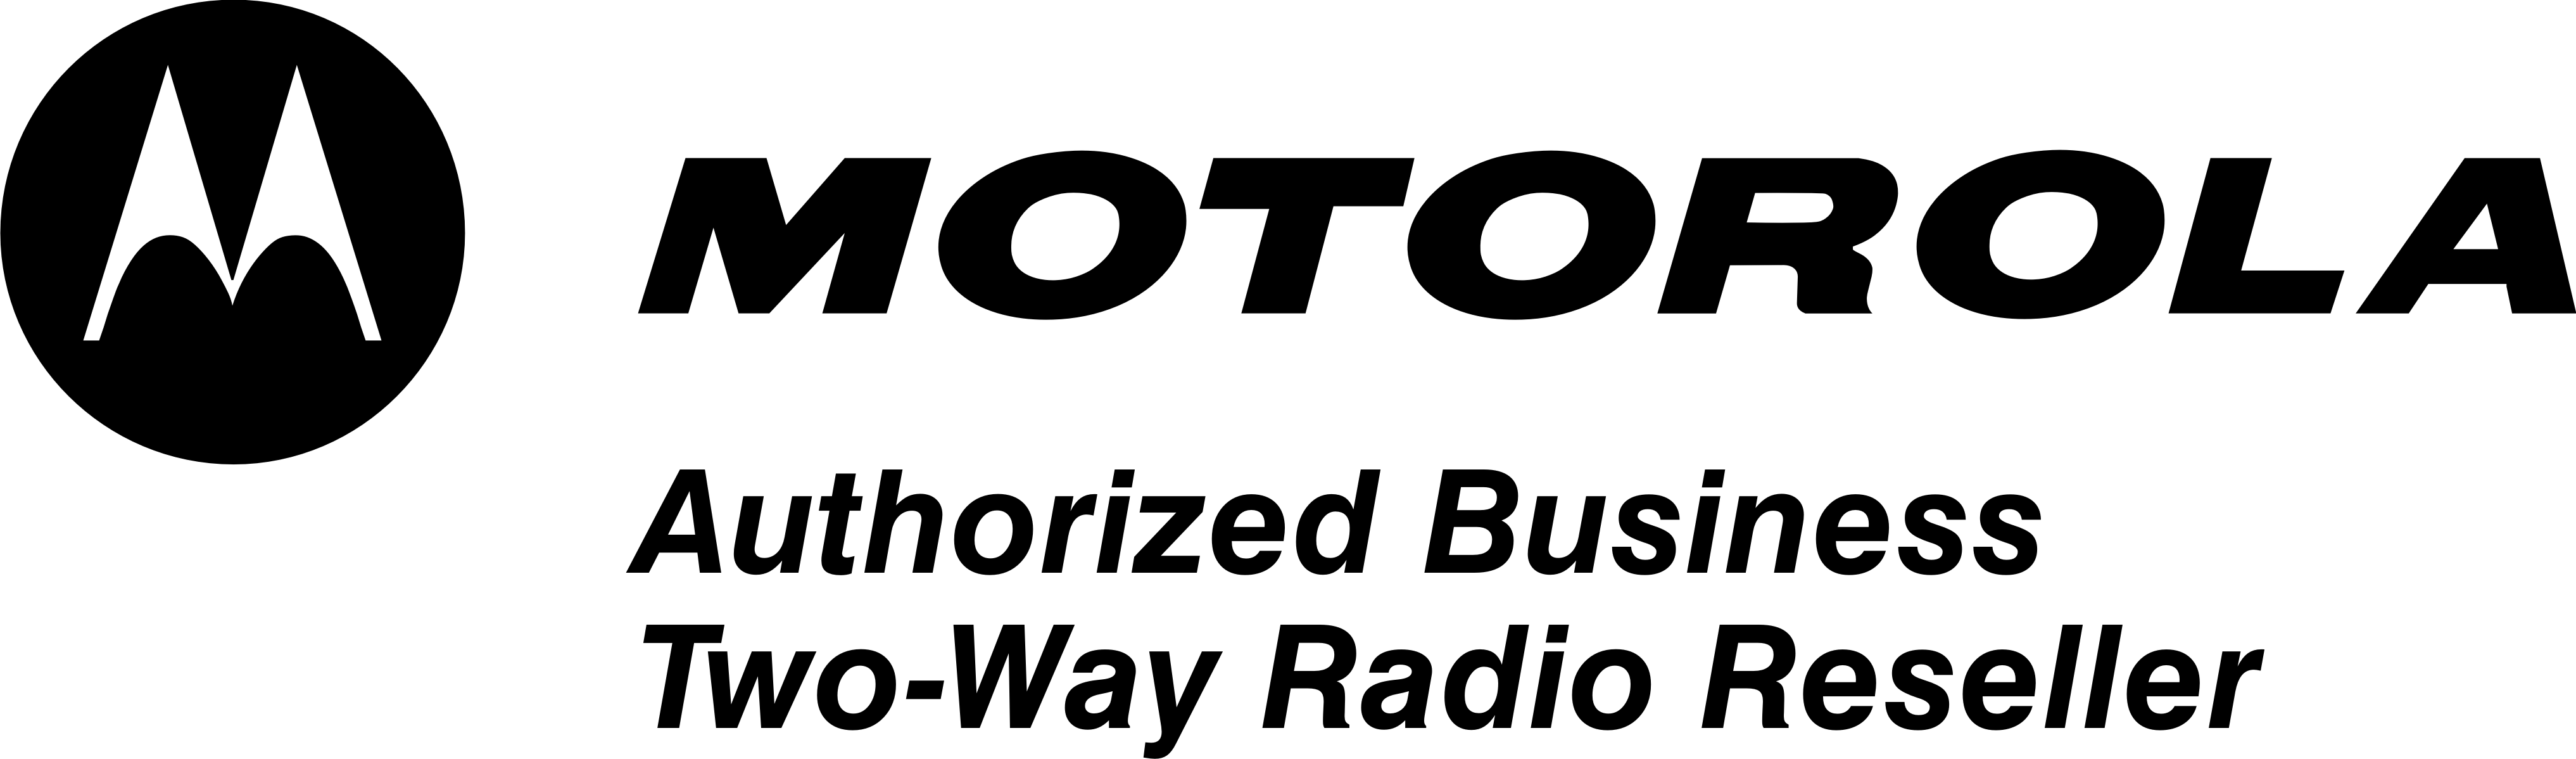 Motorola Radio Logo Logodix